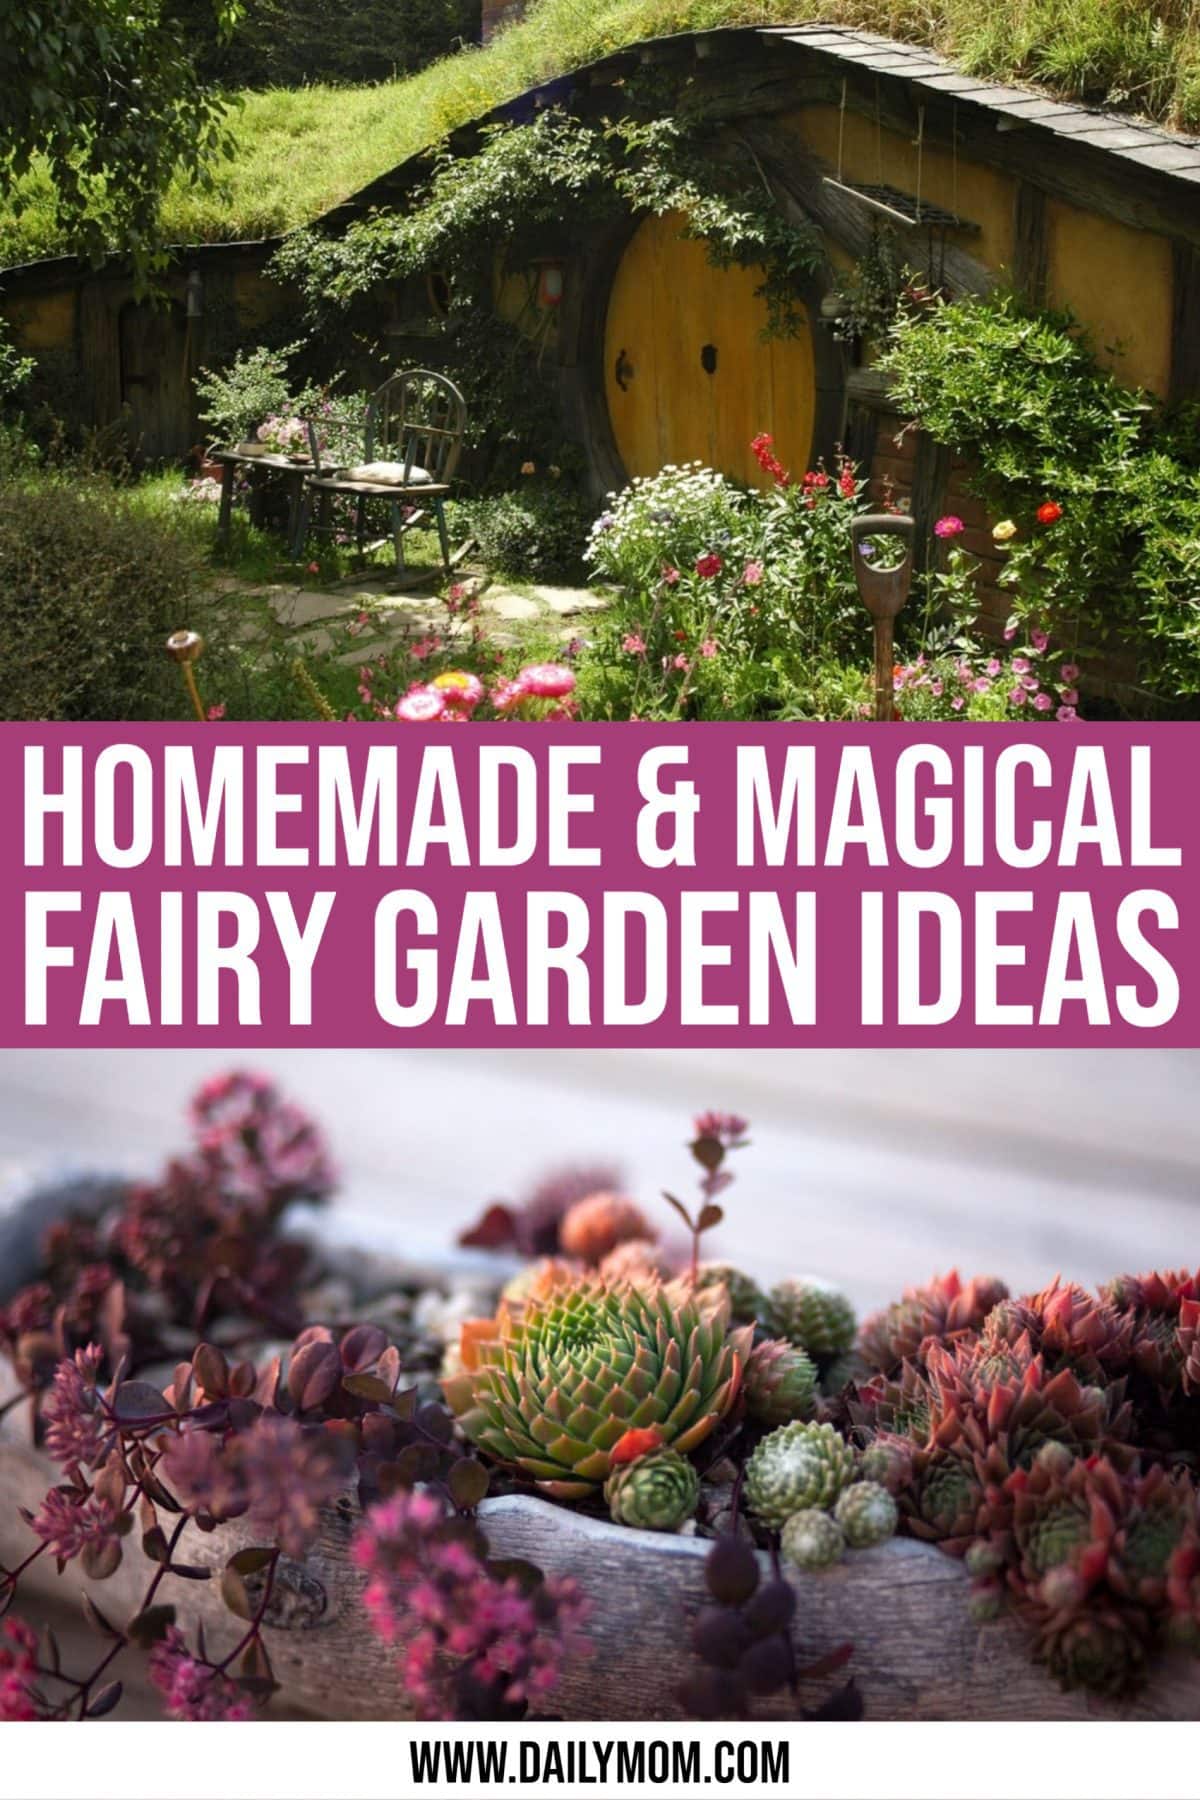 Magical Homemade Fairy Garden Ideas